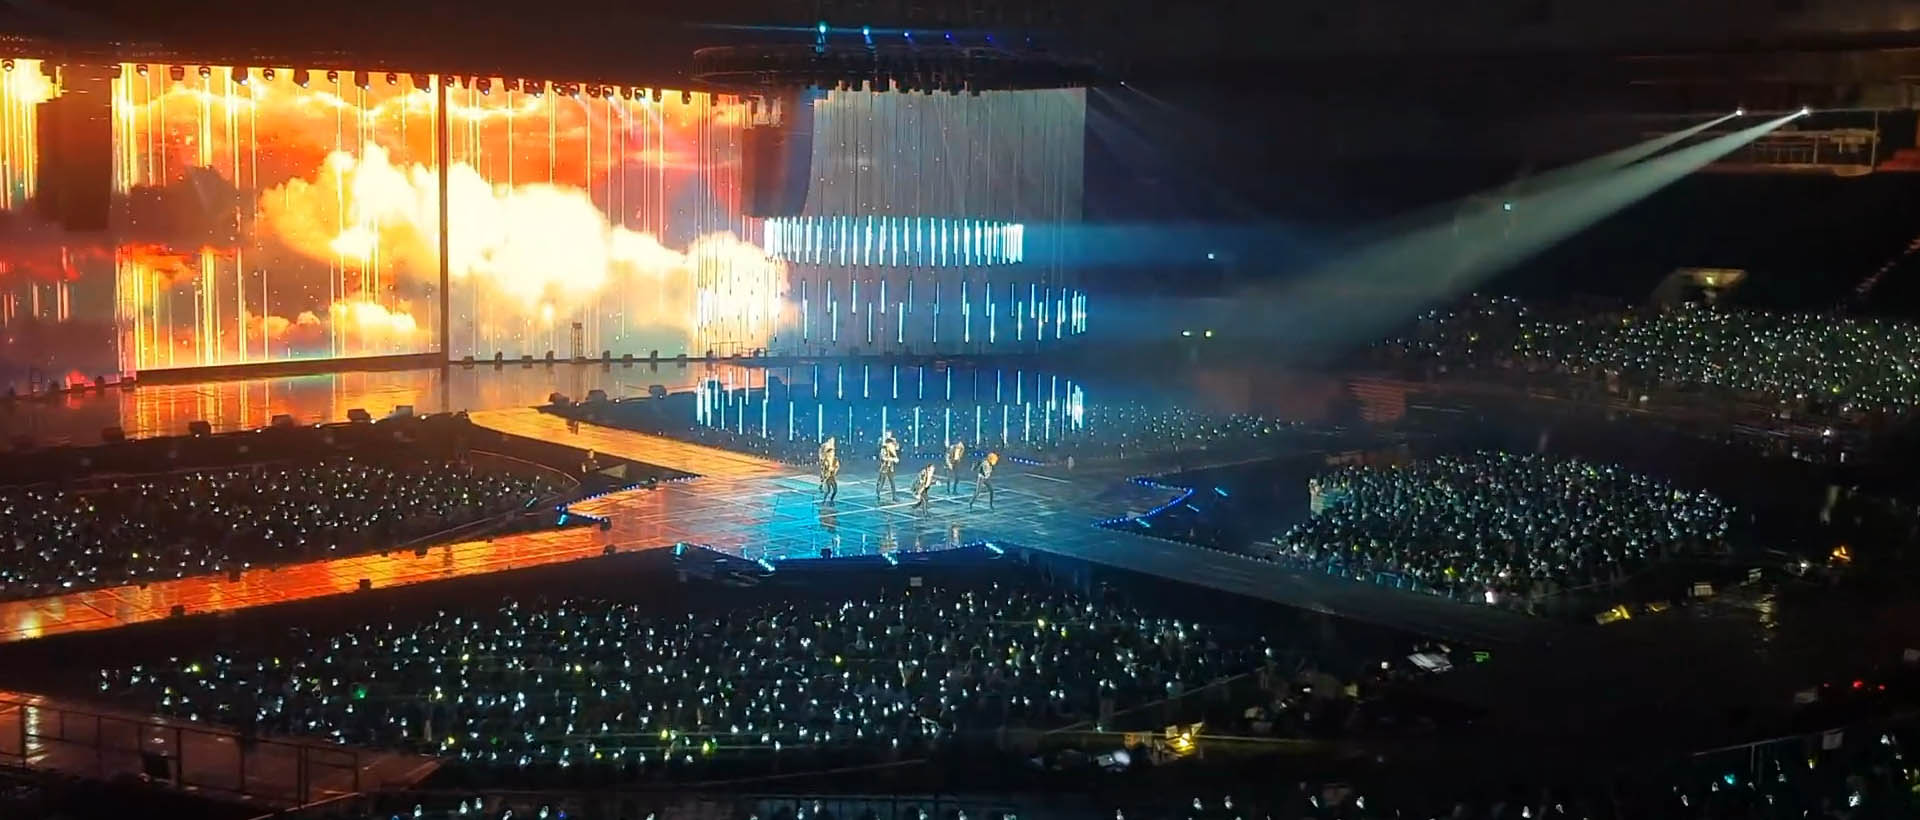 GOT7 2019 WORLD TOUR 'KEEP SPINNING' SPOT in Seoul,Korea (2)